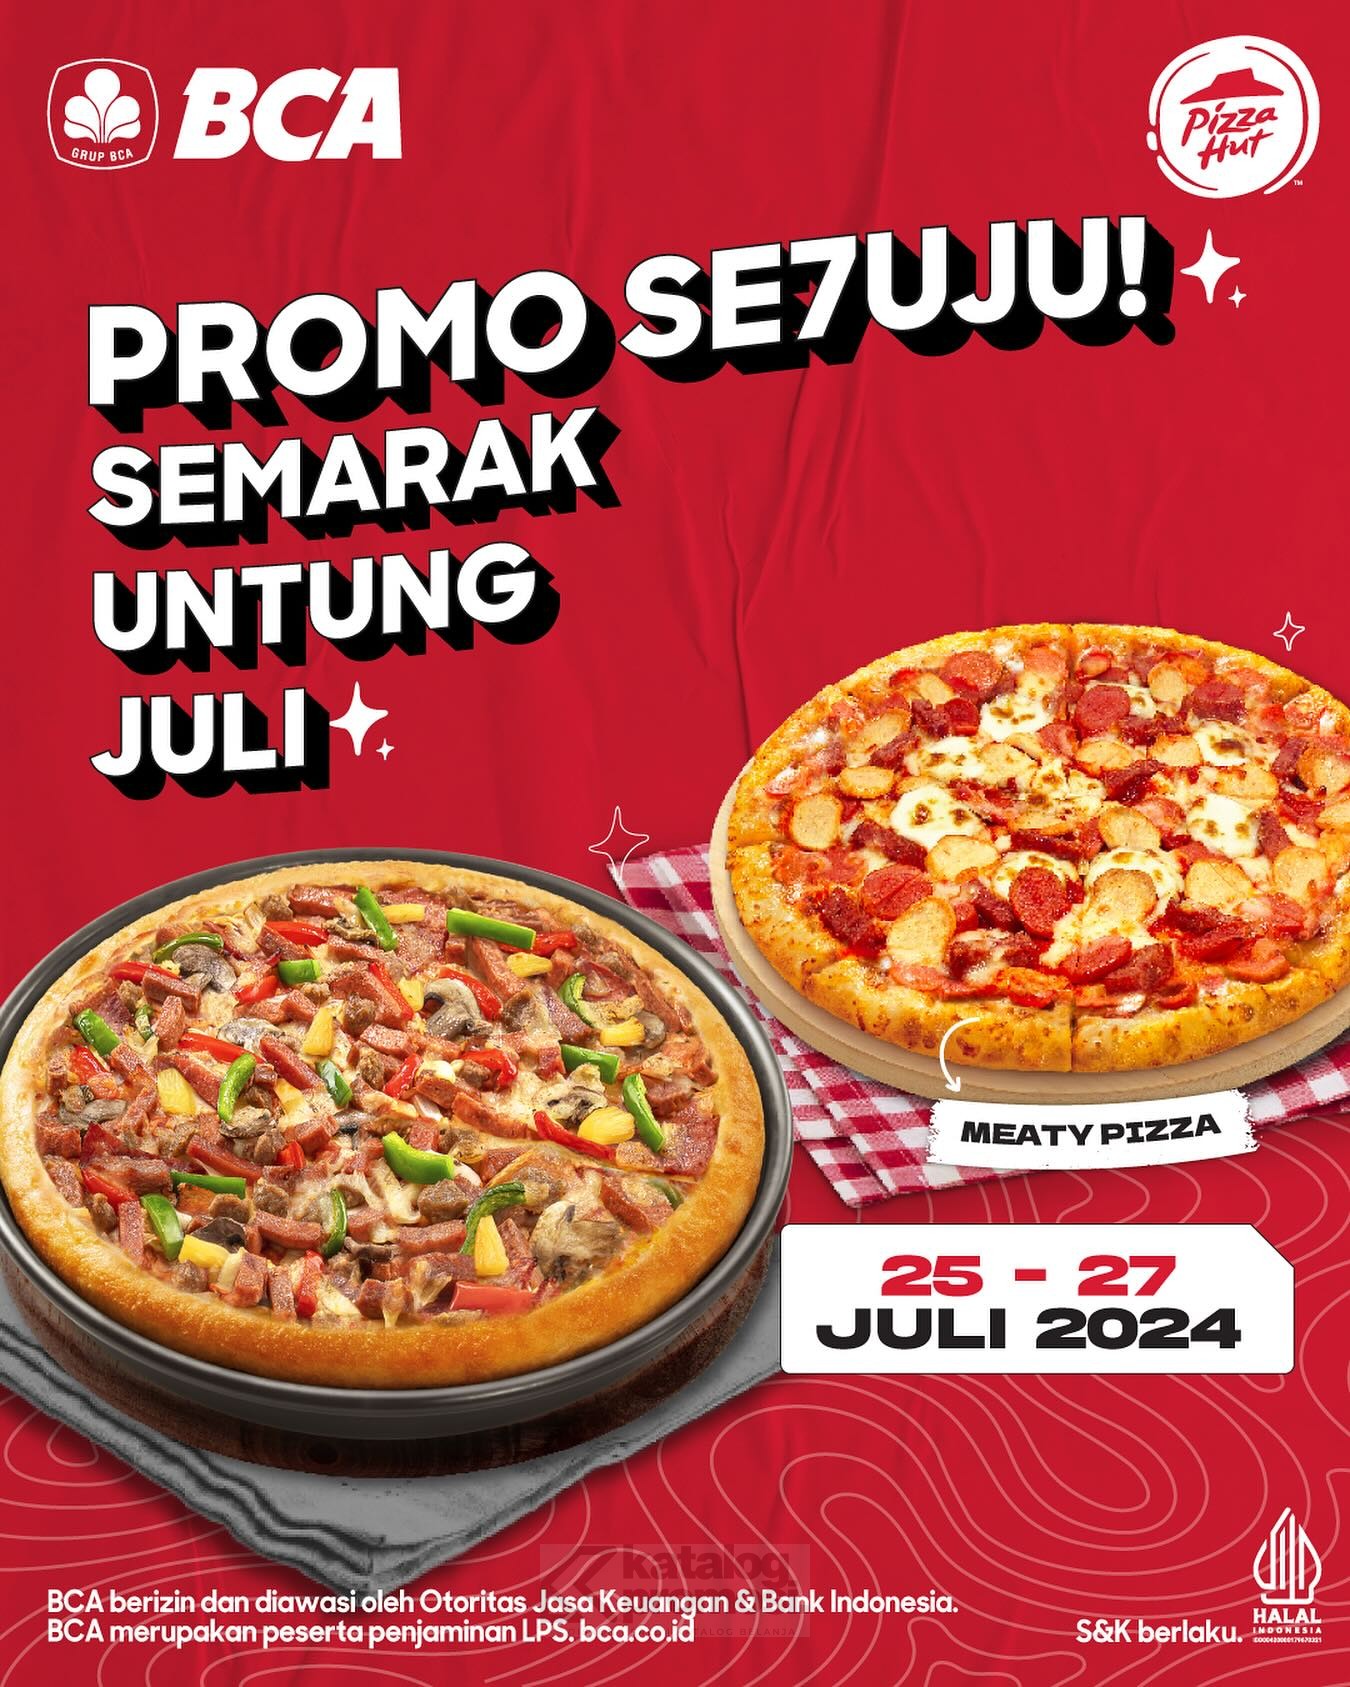 Promo PIZZA HUT SPESIAL BCA PAYDAY - BELI 1 DAPAT 2 PIZZA* berlaku mulai tanggal 25 - 27 JULI 2024